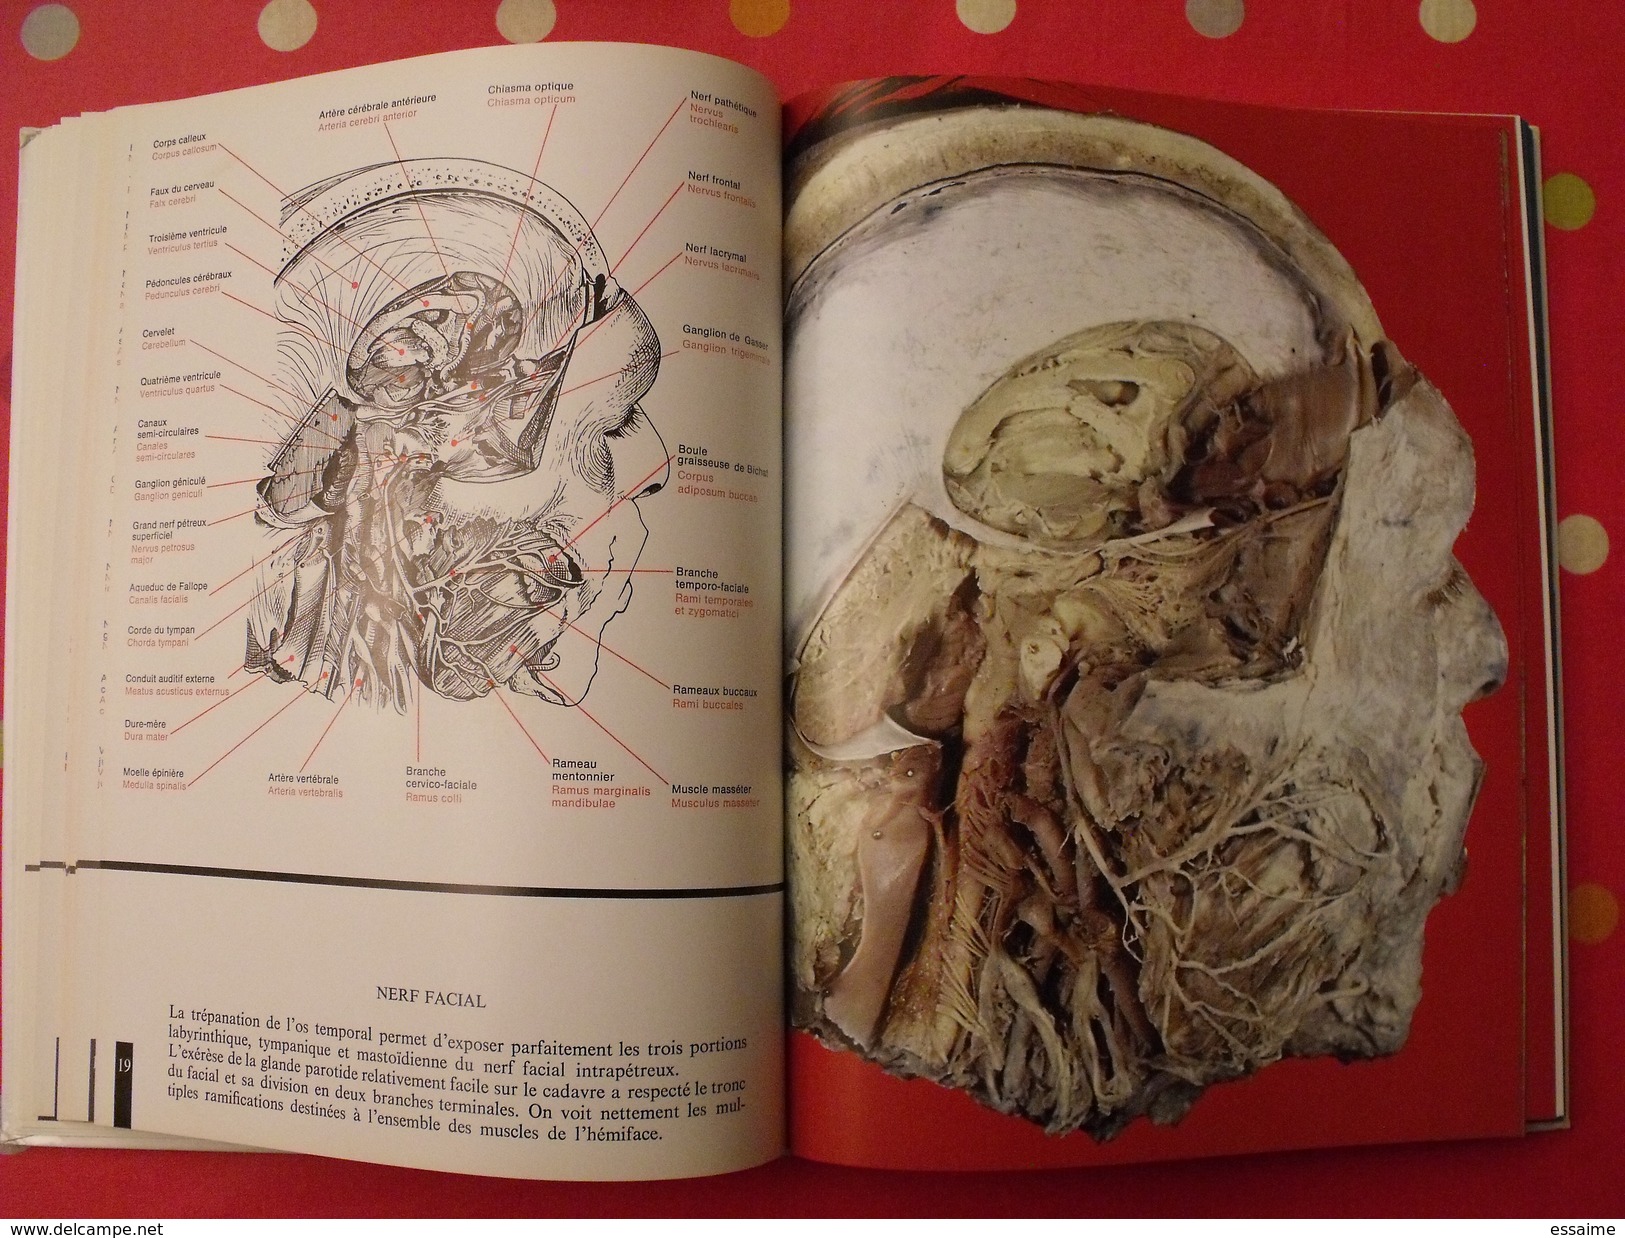 Atlas anatomique Sandoz. tête,cou,tronc,membres. 1971. superbes photos de coupes anatomiques